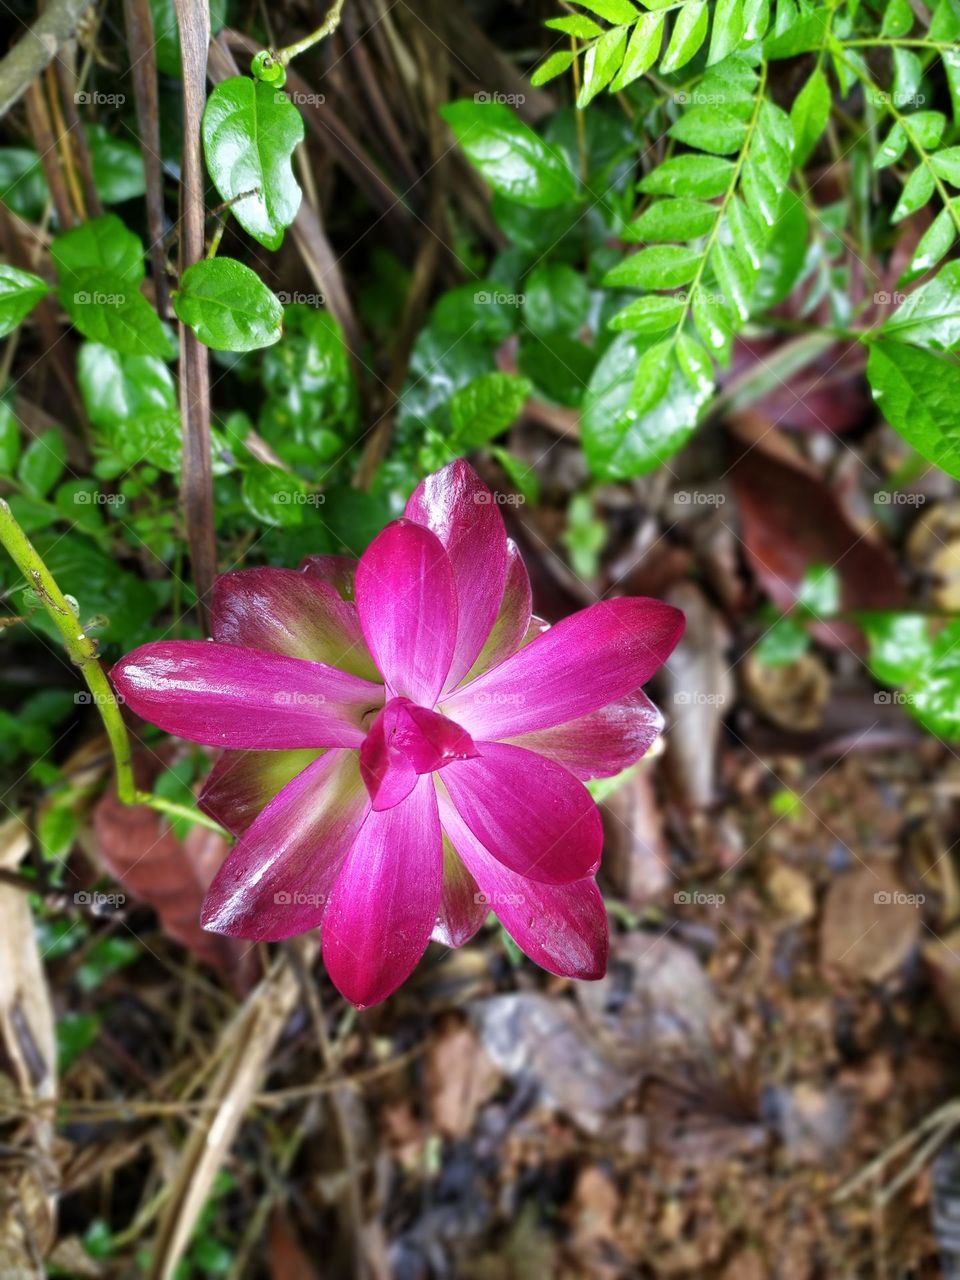 Rare Flower after Rain